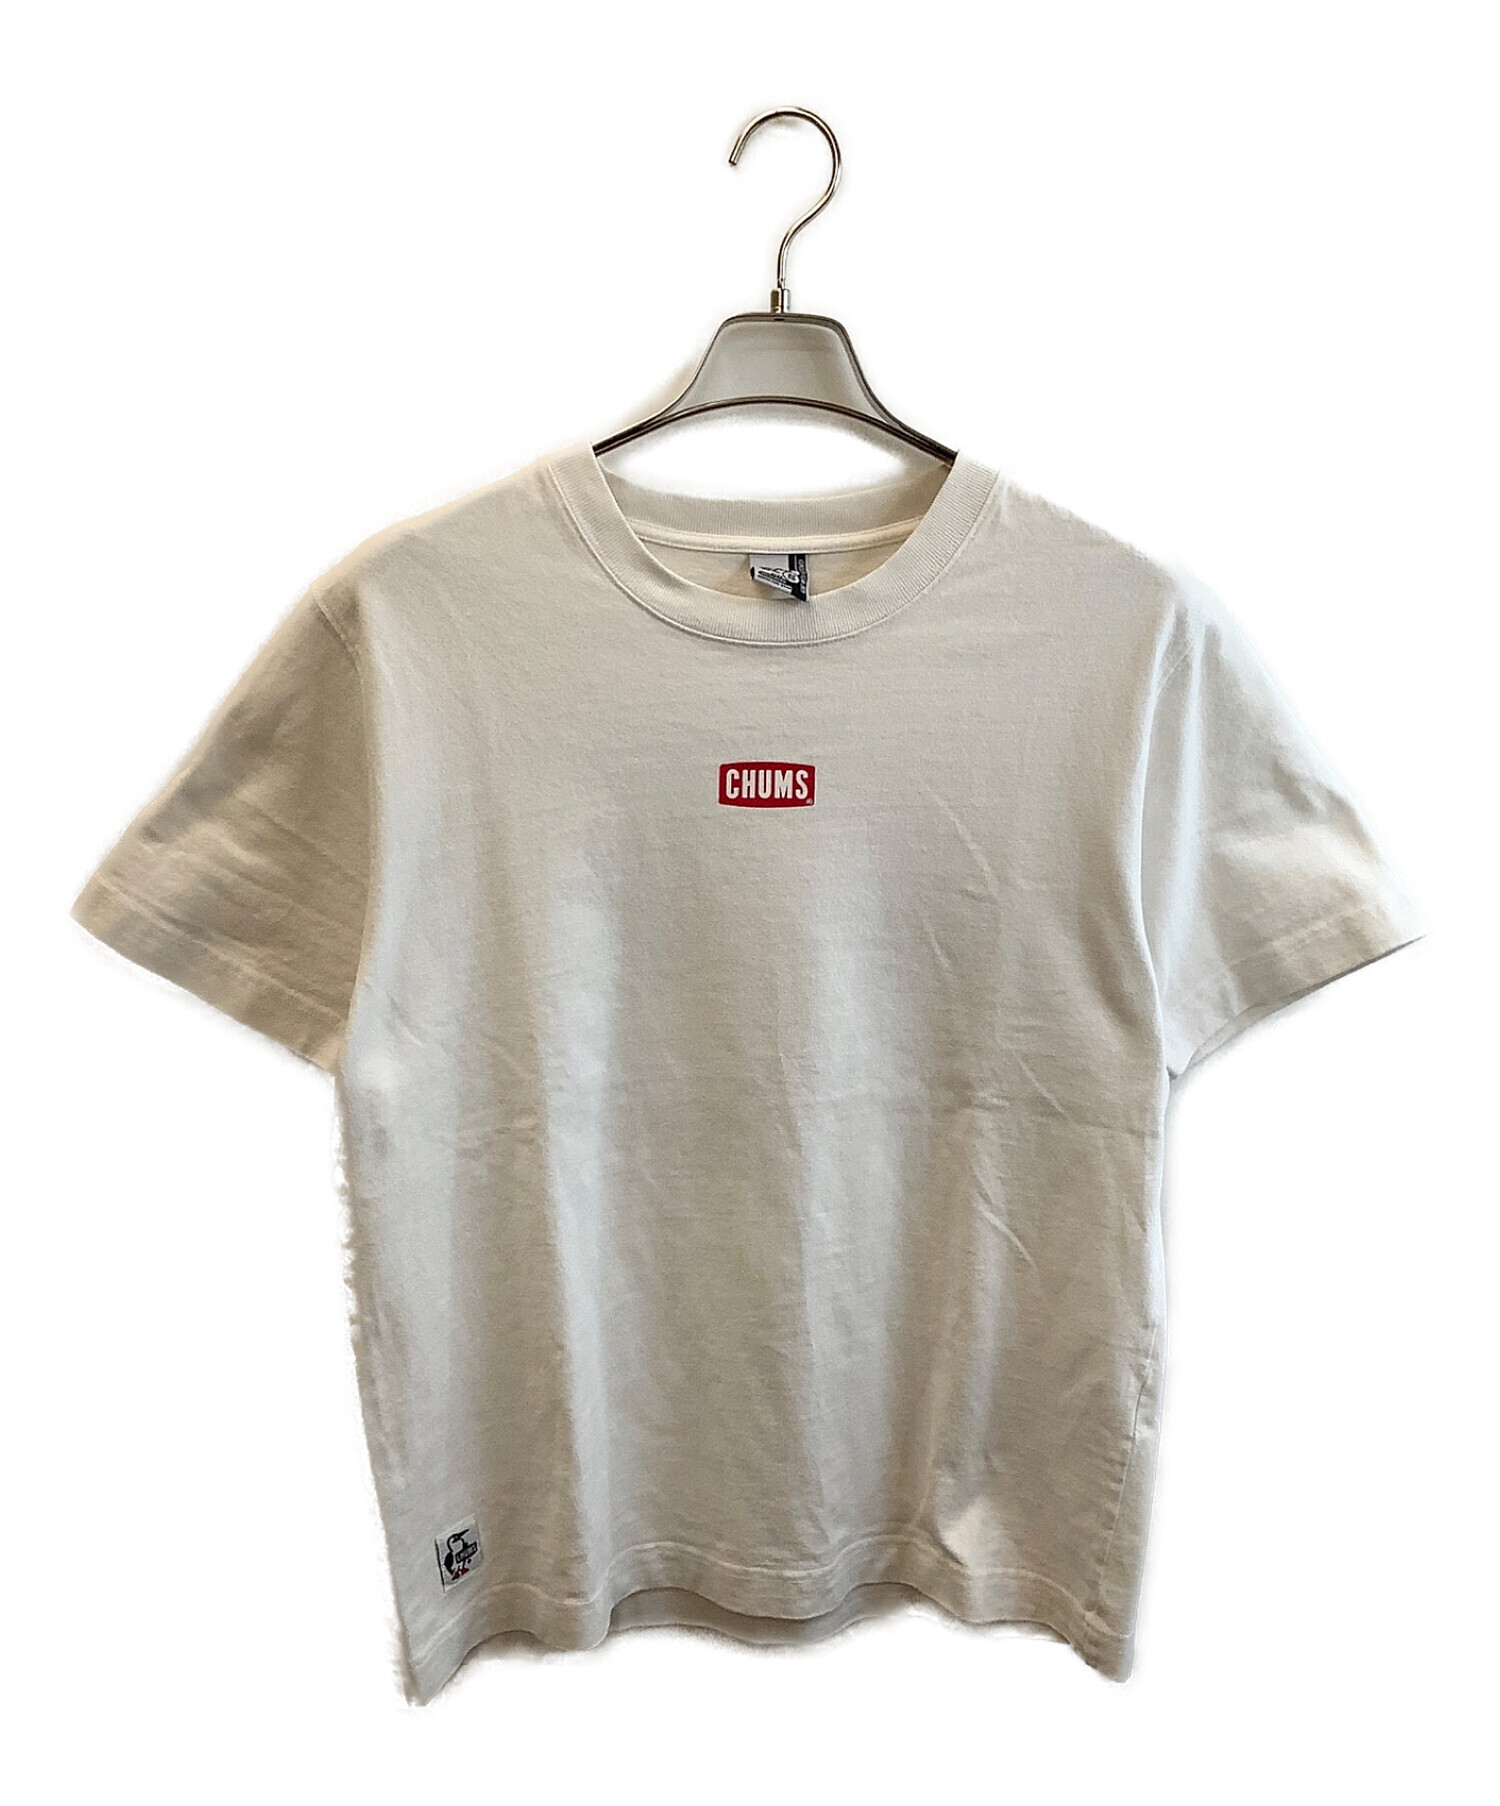 CHUMS (チャムス) ワンポイントTシャツ ホワイト サイズ:S